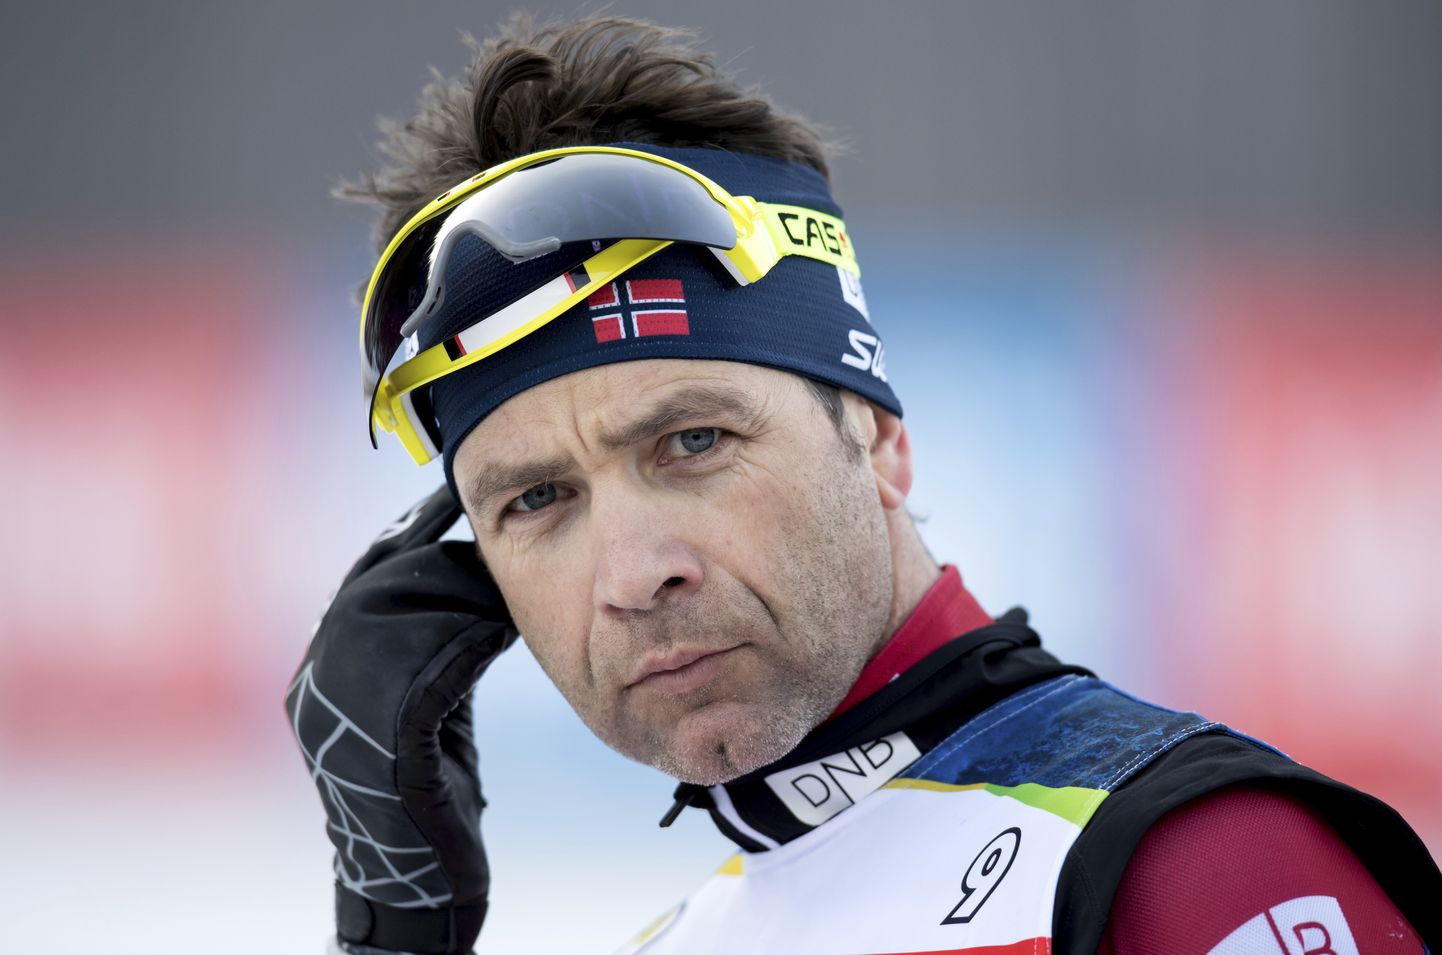 Ole Einar Bjørndalen.